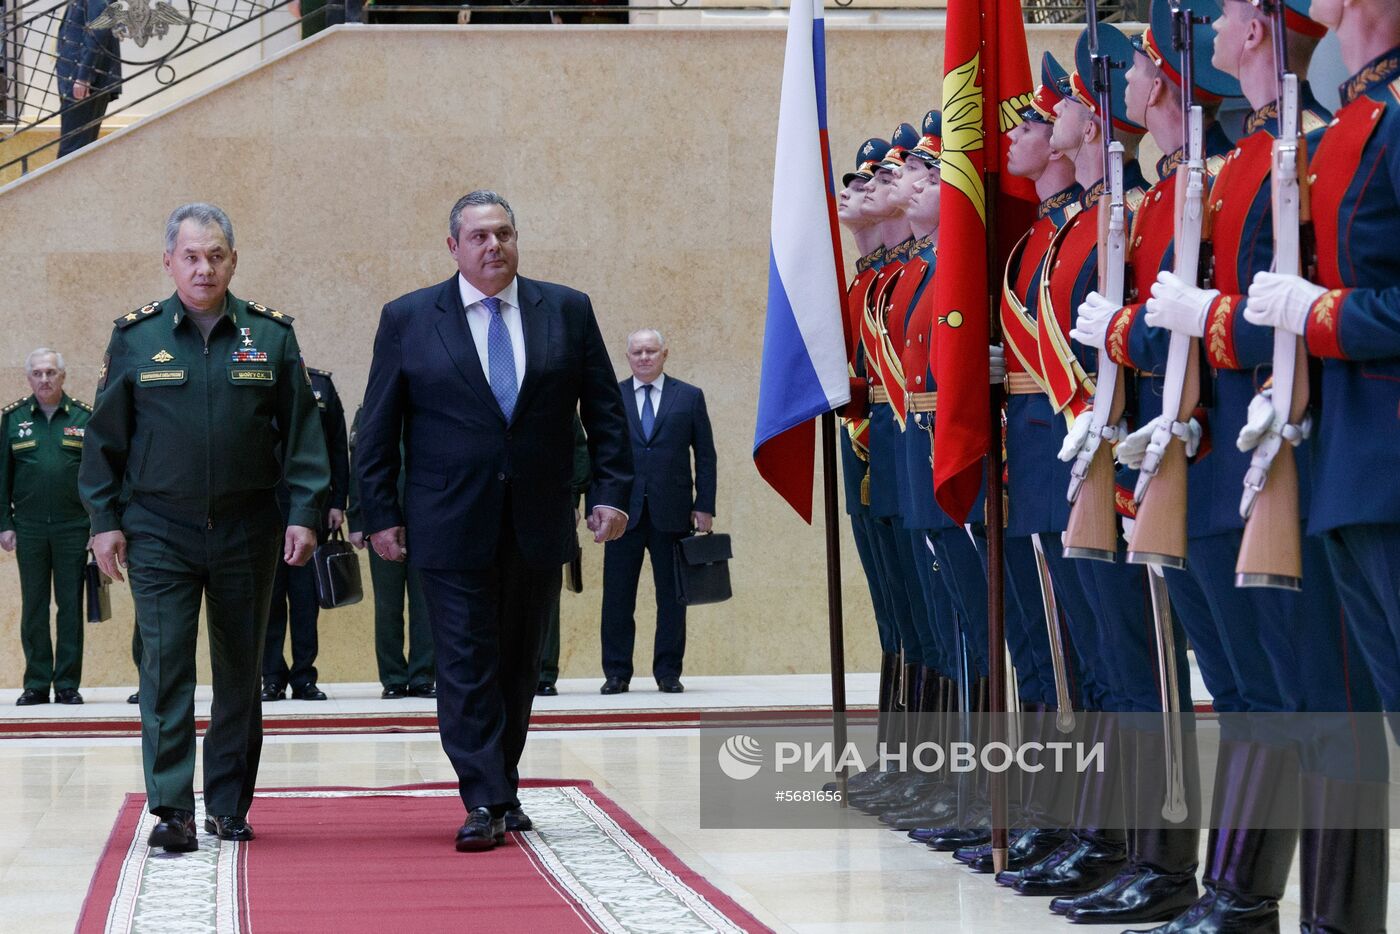 Встреча министров обороны России и Греции С. Шойгу и П. Камменоса